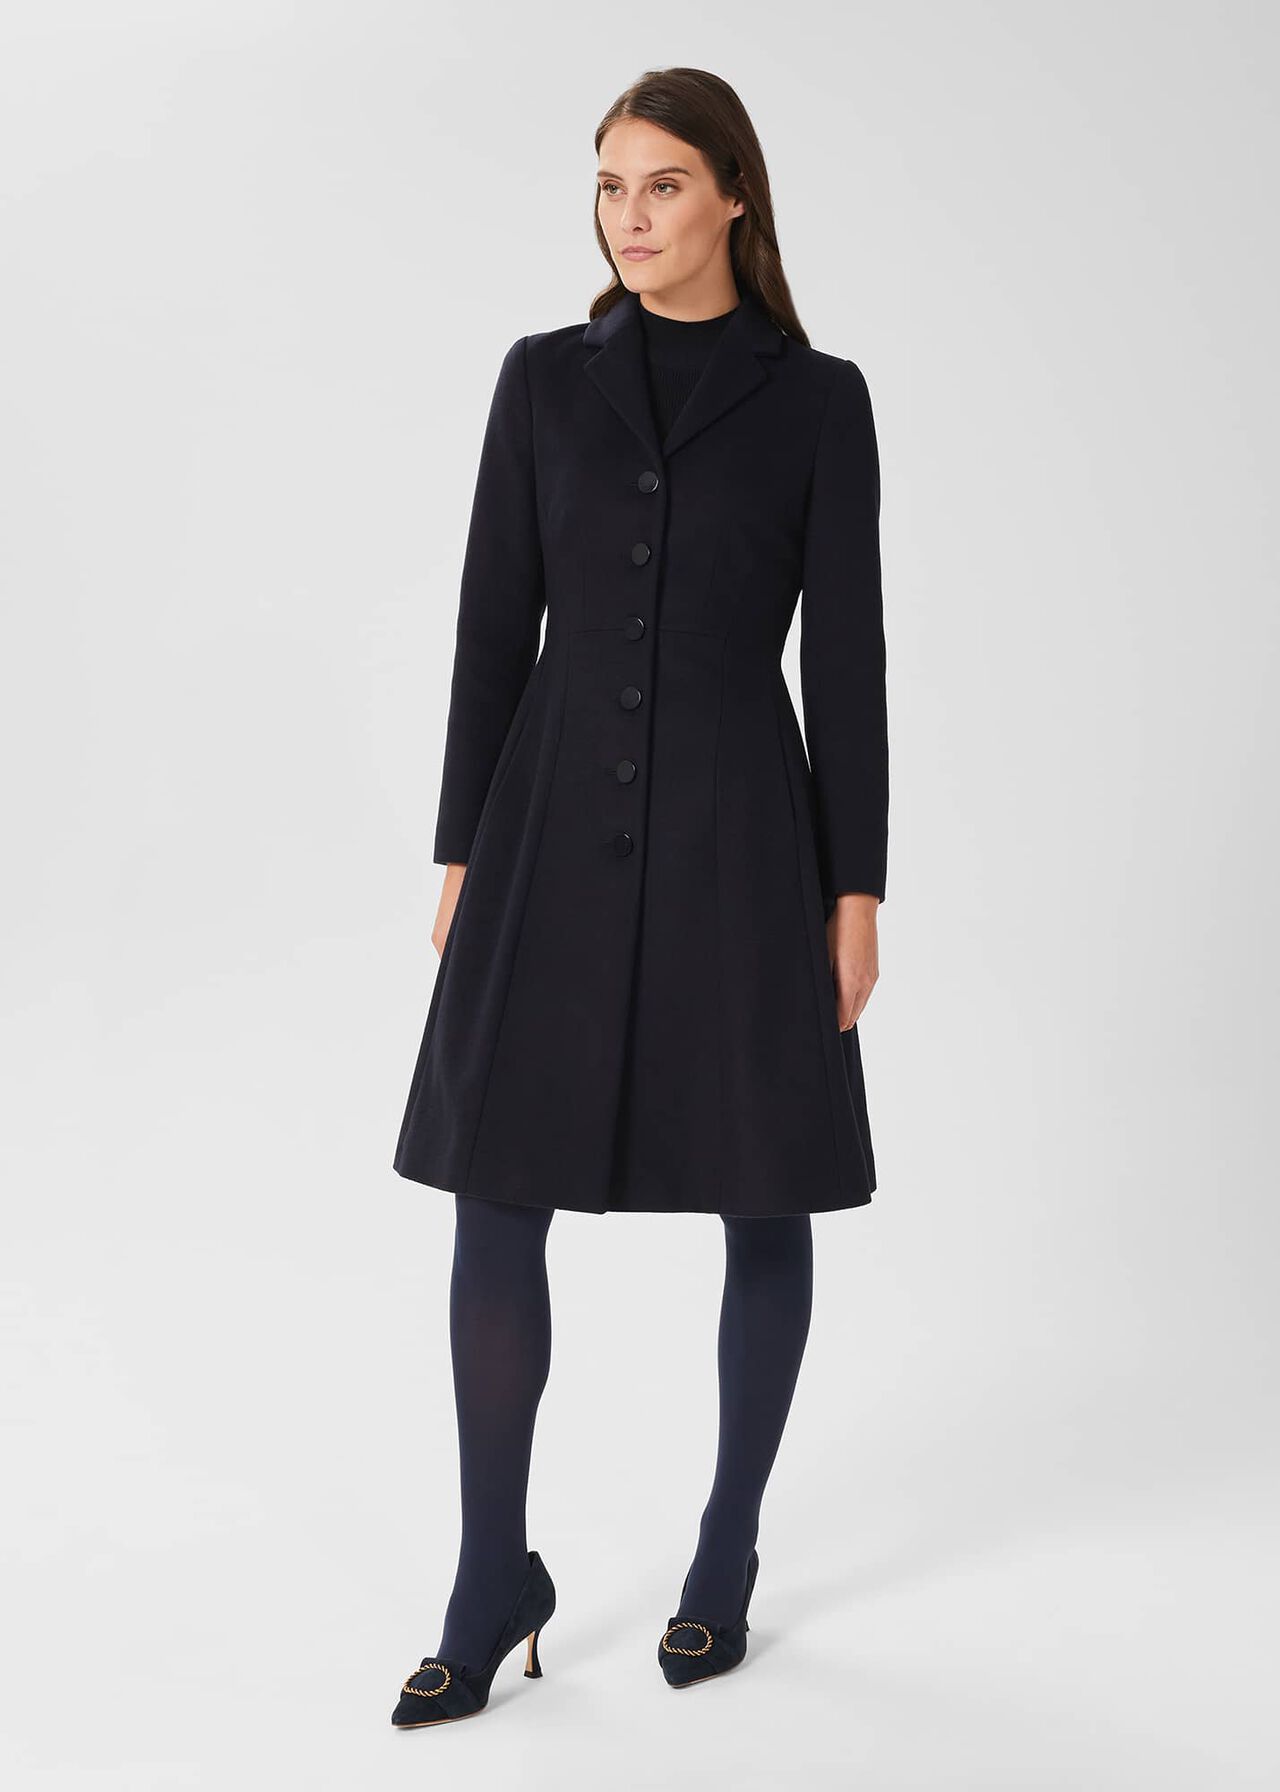 Milly Wool Blend Coat | Hobbs UK